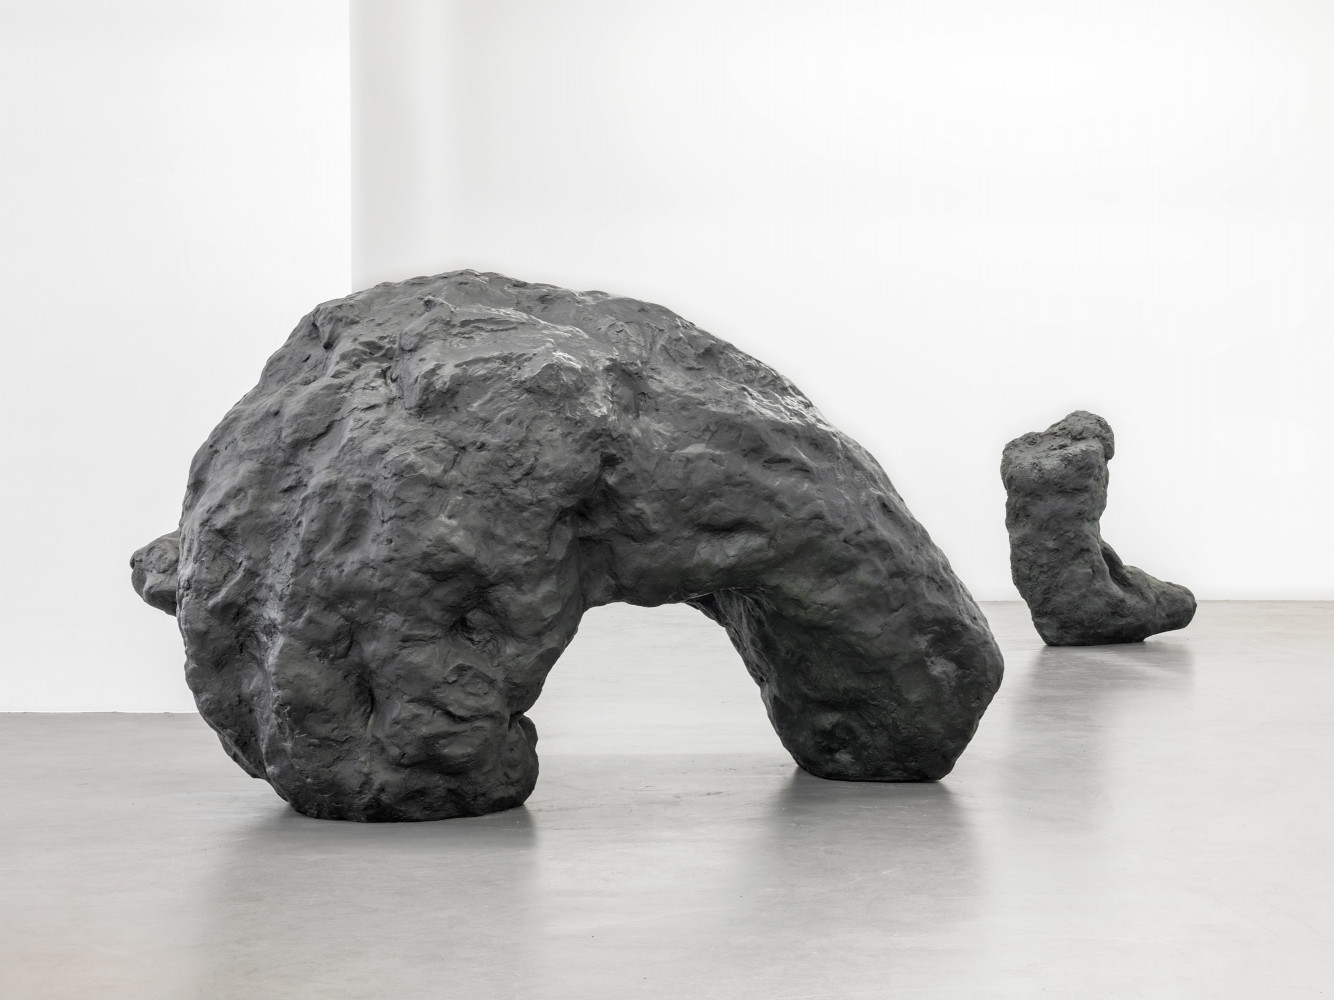 William Tucker, ‘Skulptur’, Installation view, Buchmann Galerie, 2015